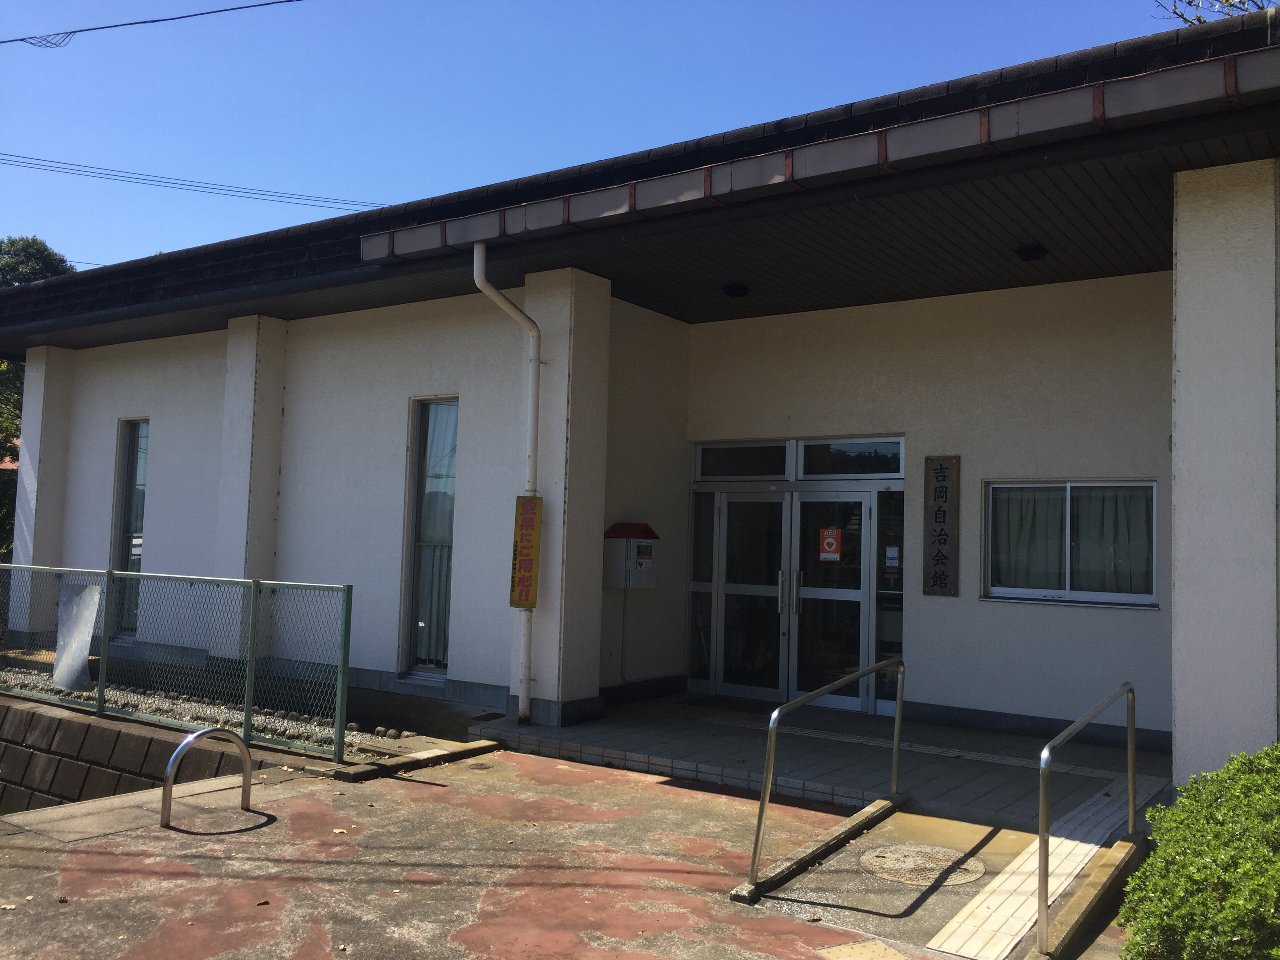 スロープがある吉岡自治会館の入り口を写した写真